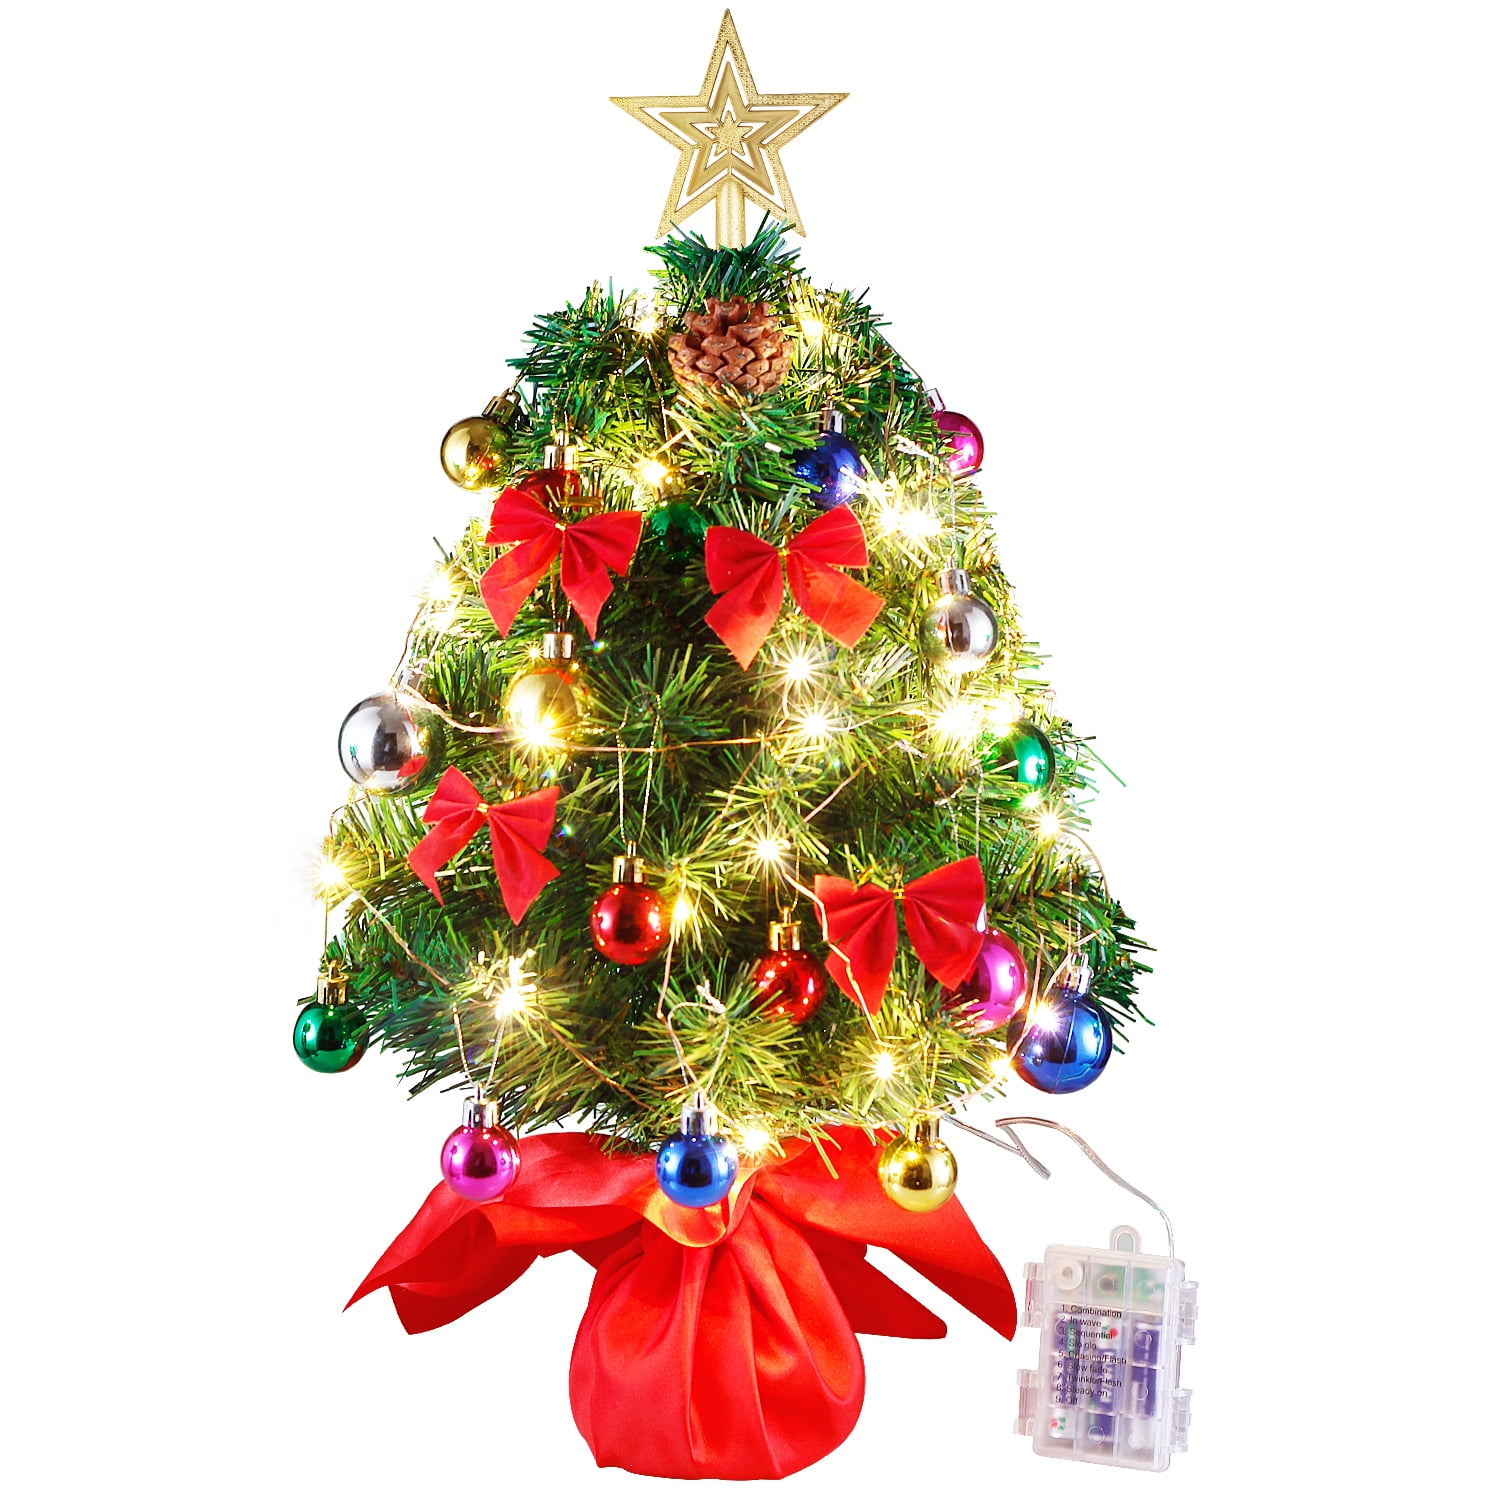 CHRISTMAS FAIRY LIGHTS CLEAR MULTI COLOUR XMAS BULBS TREE FESTIVAL DECORATION 